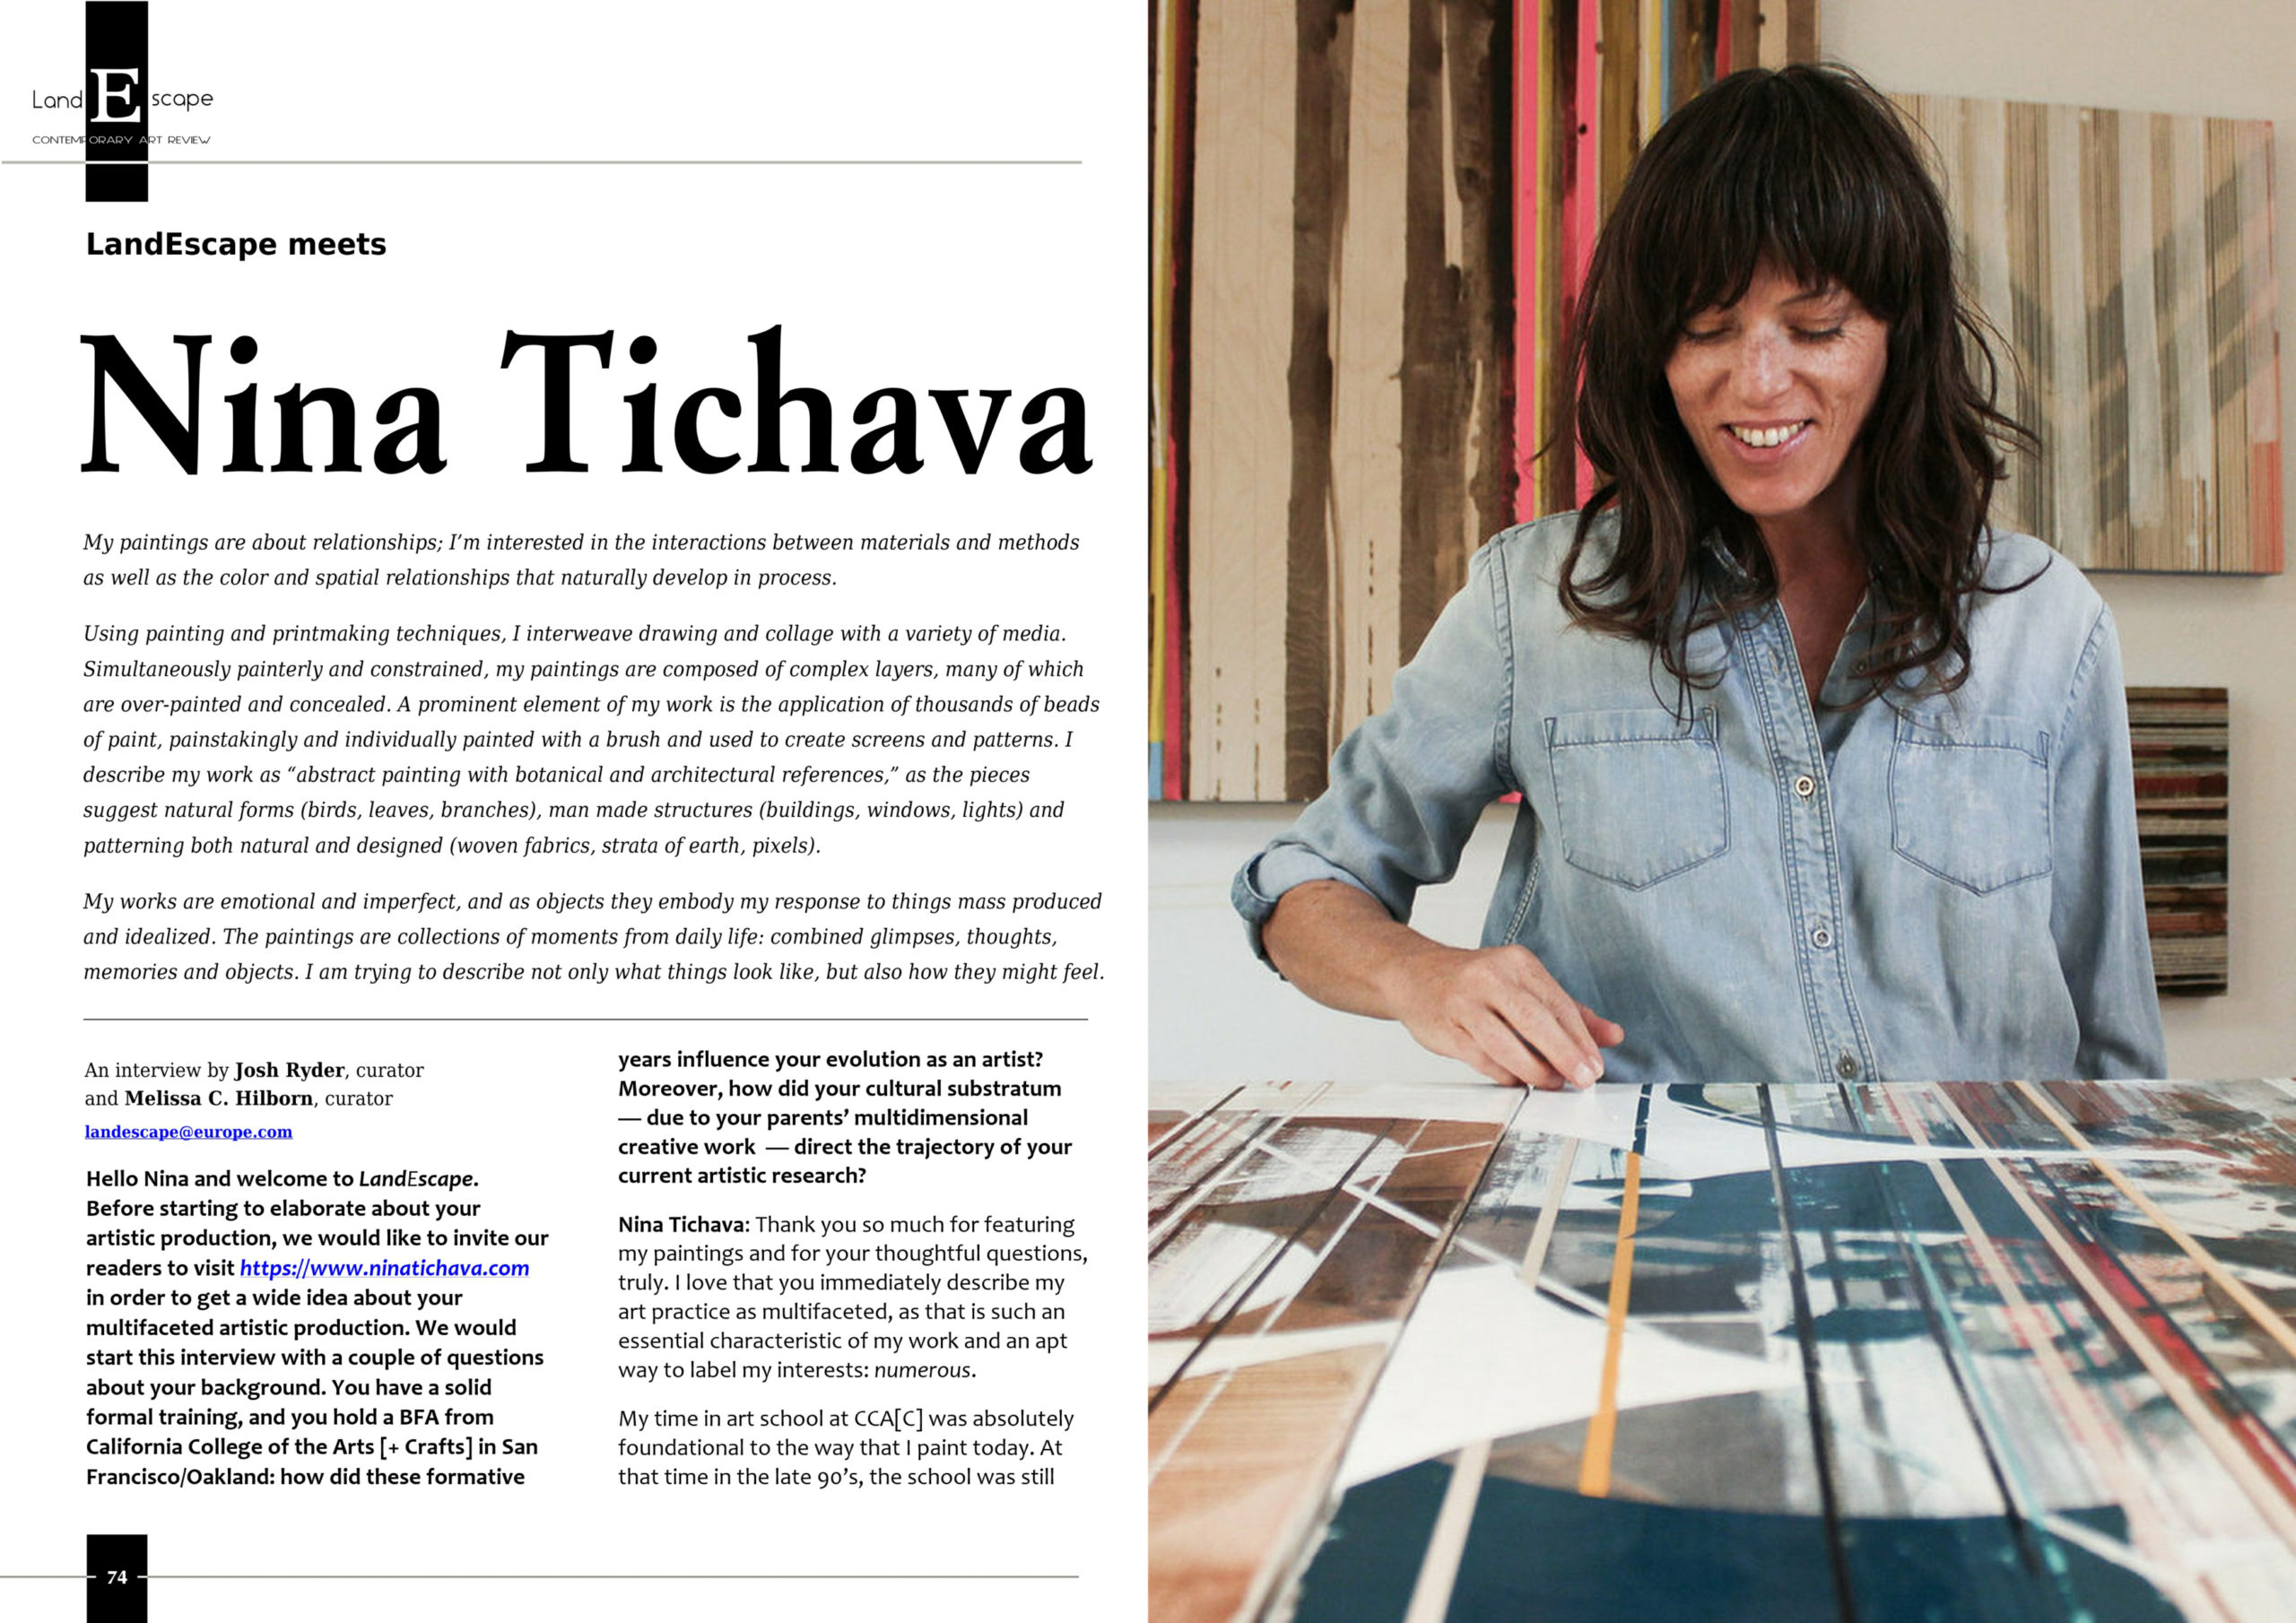 LandEscape Art Review Magazine features Nina Tichava